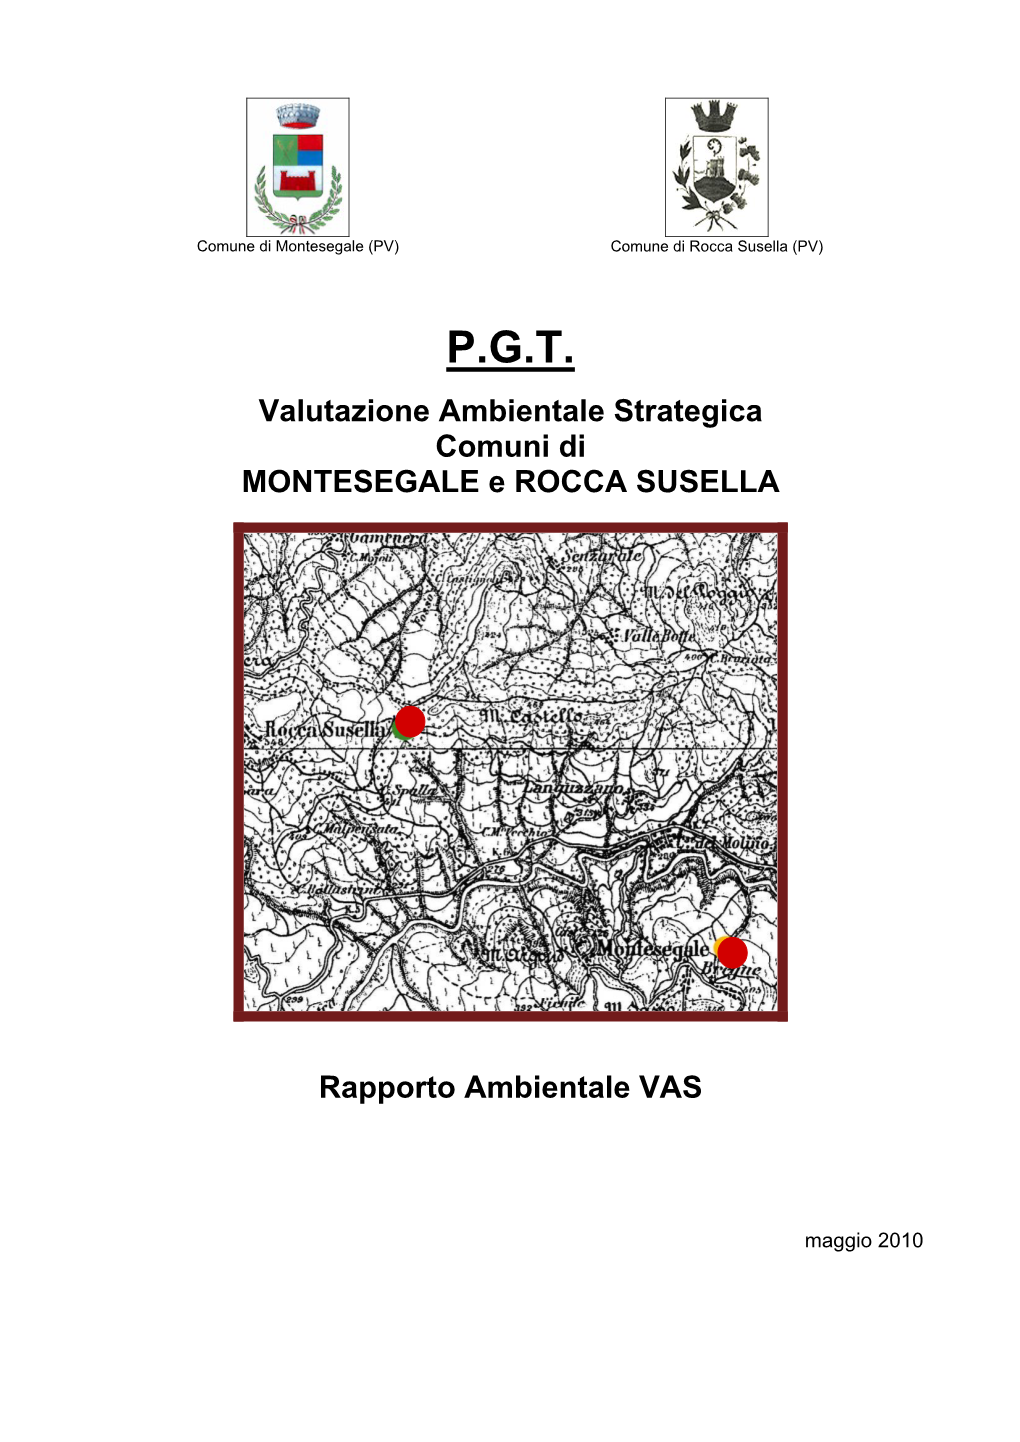 P.G.T. Valutazione Ambientale Strategica Comuni Di MONTESEGALE E ROCCA SUSELLA